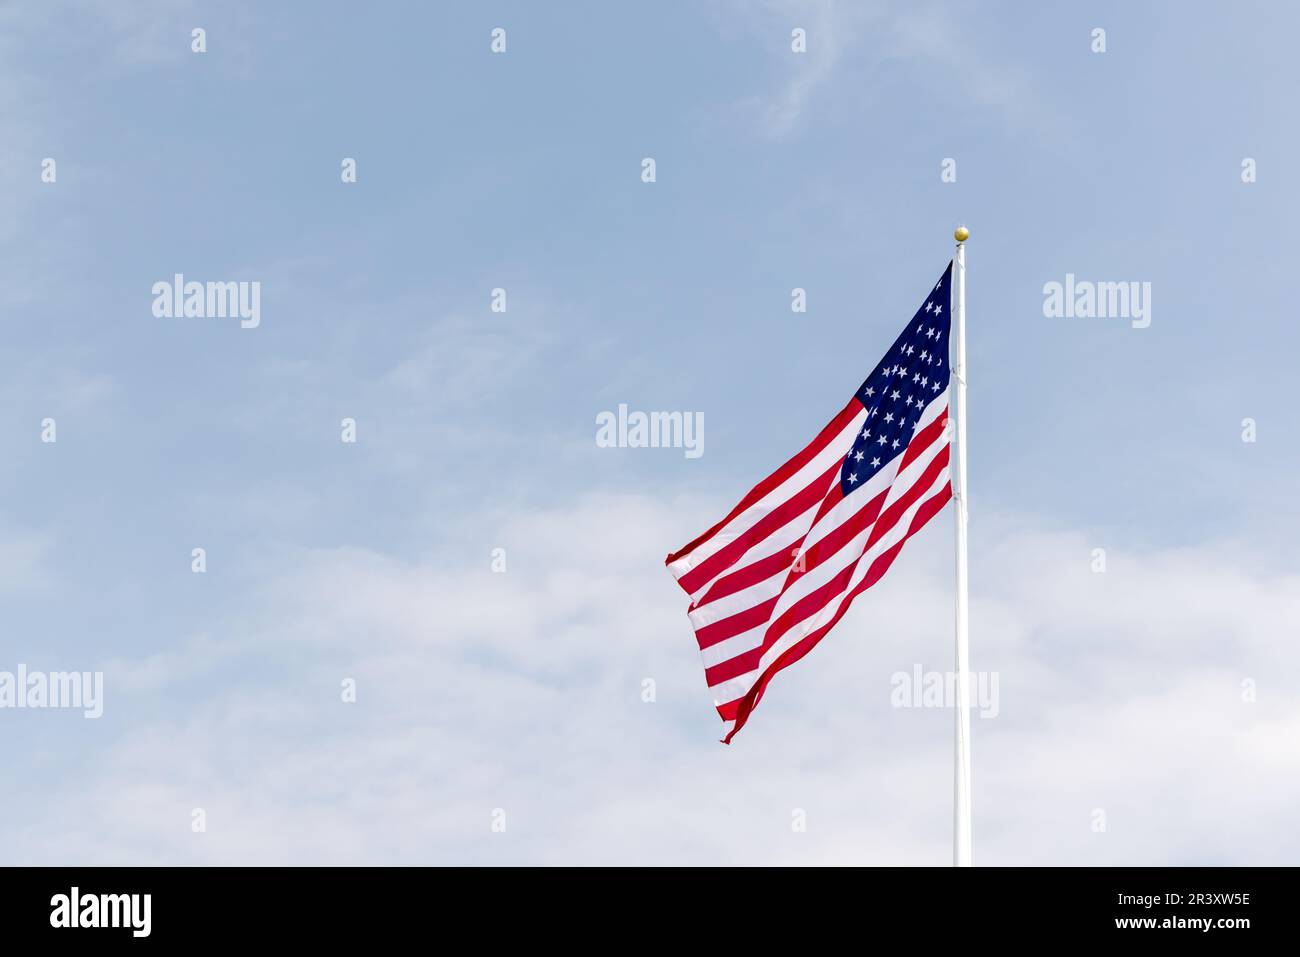 Une photo du drapeau américain qui agite contre le ciel symbolisant le patriotisme, la liberté et la fierté nationale Banque D'Images